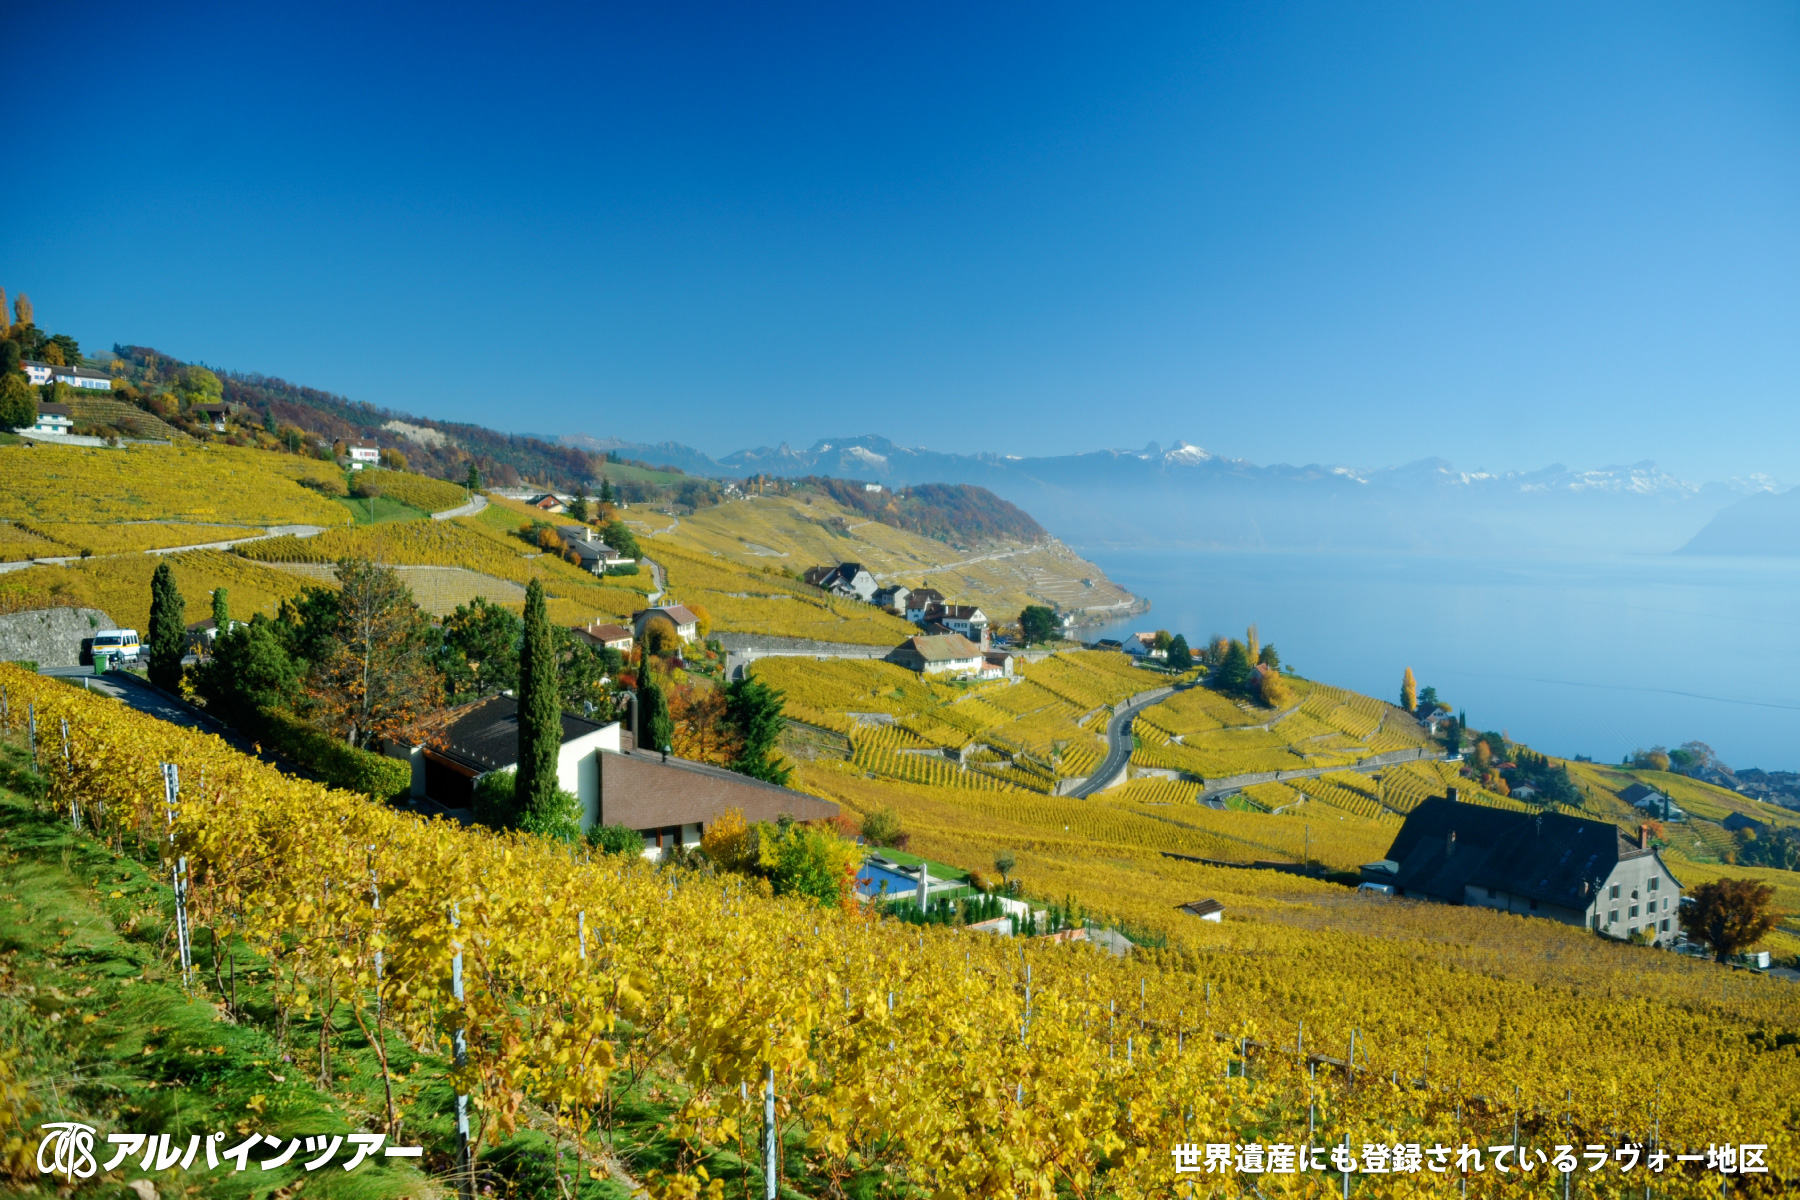 【今日の絶景】 スイス・レマン湖地方の世界遺産ラヴォー地区